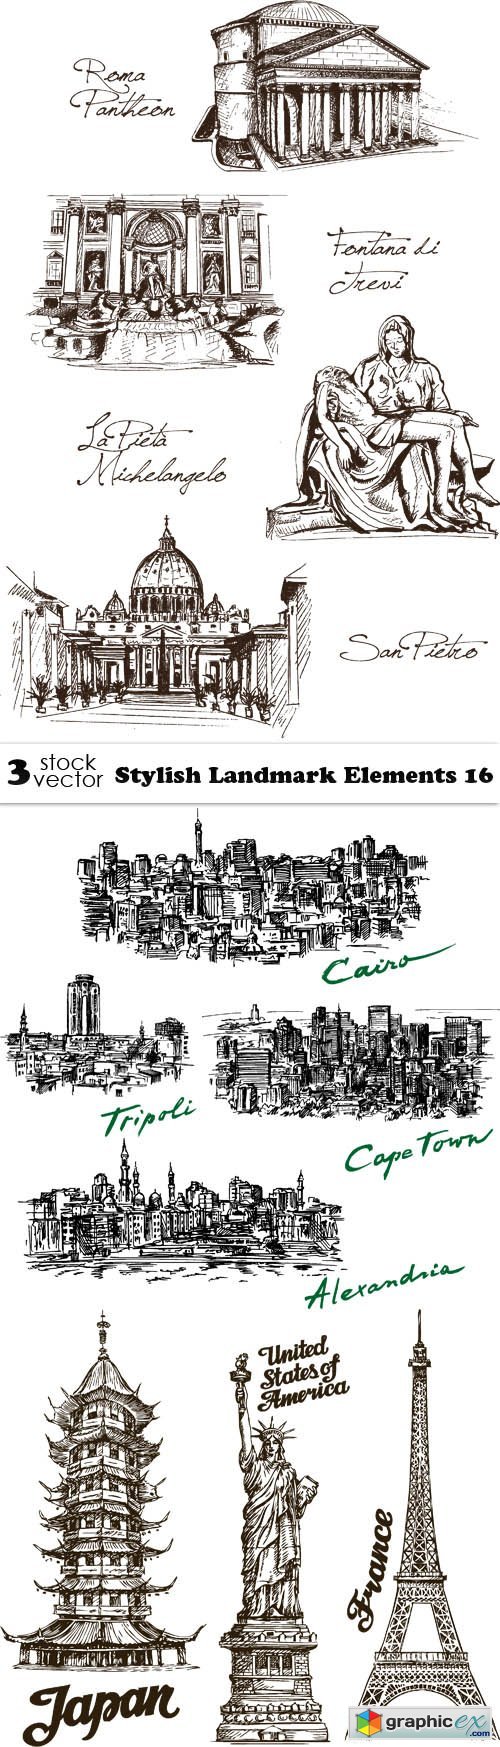 Stylish Landmark Elements 16